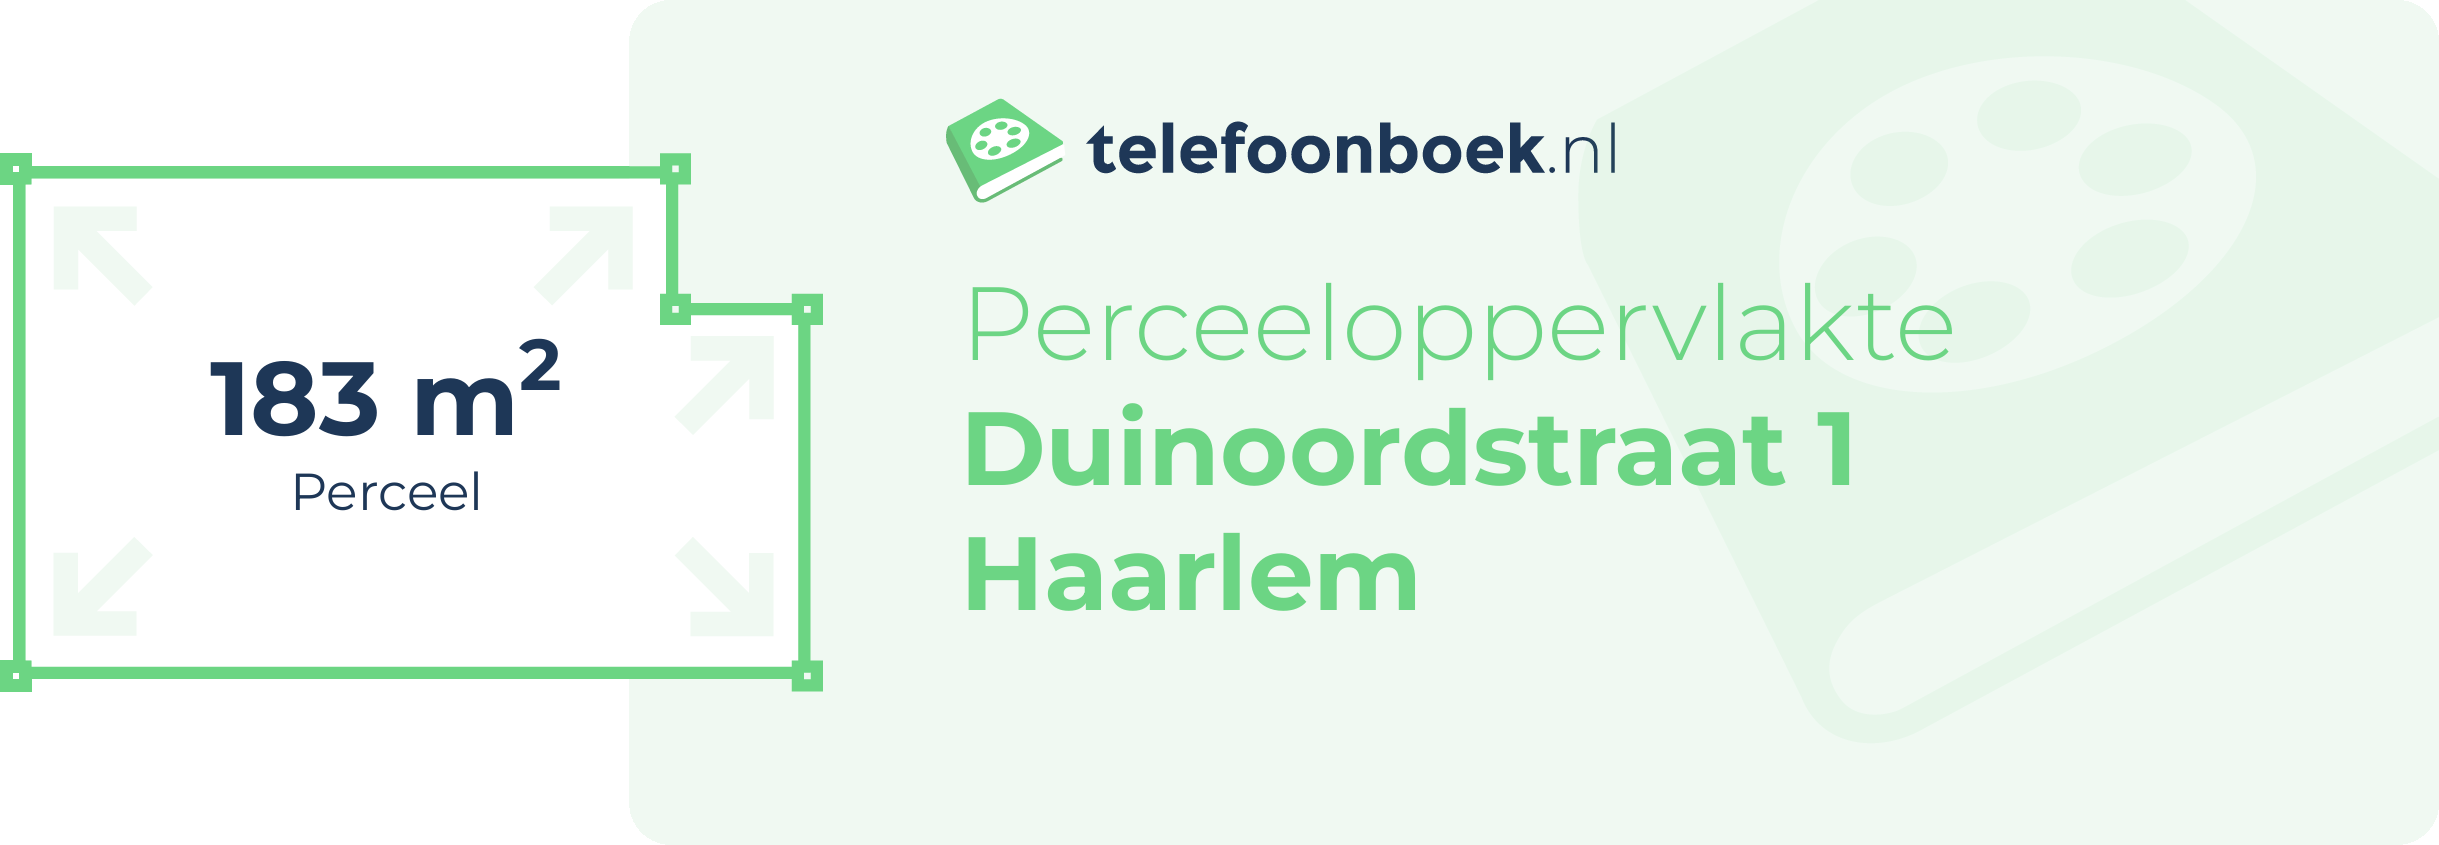 Perceeloppervlakte Duinoordstraat 1 Haarlem